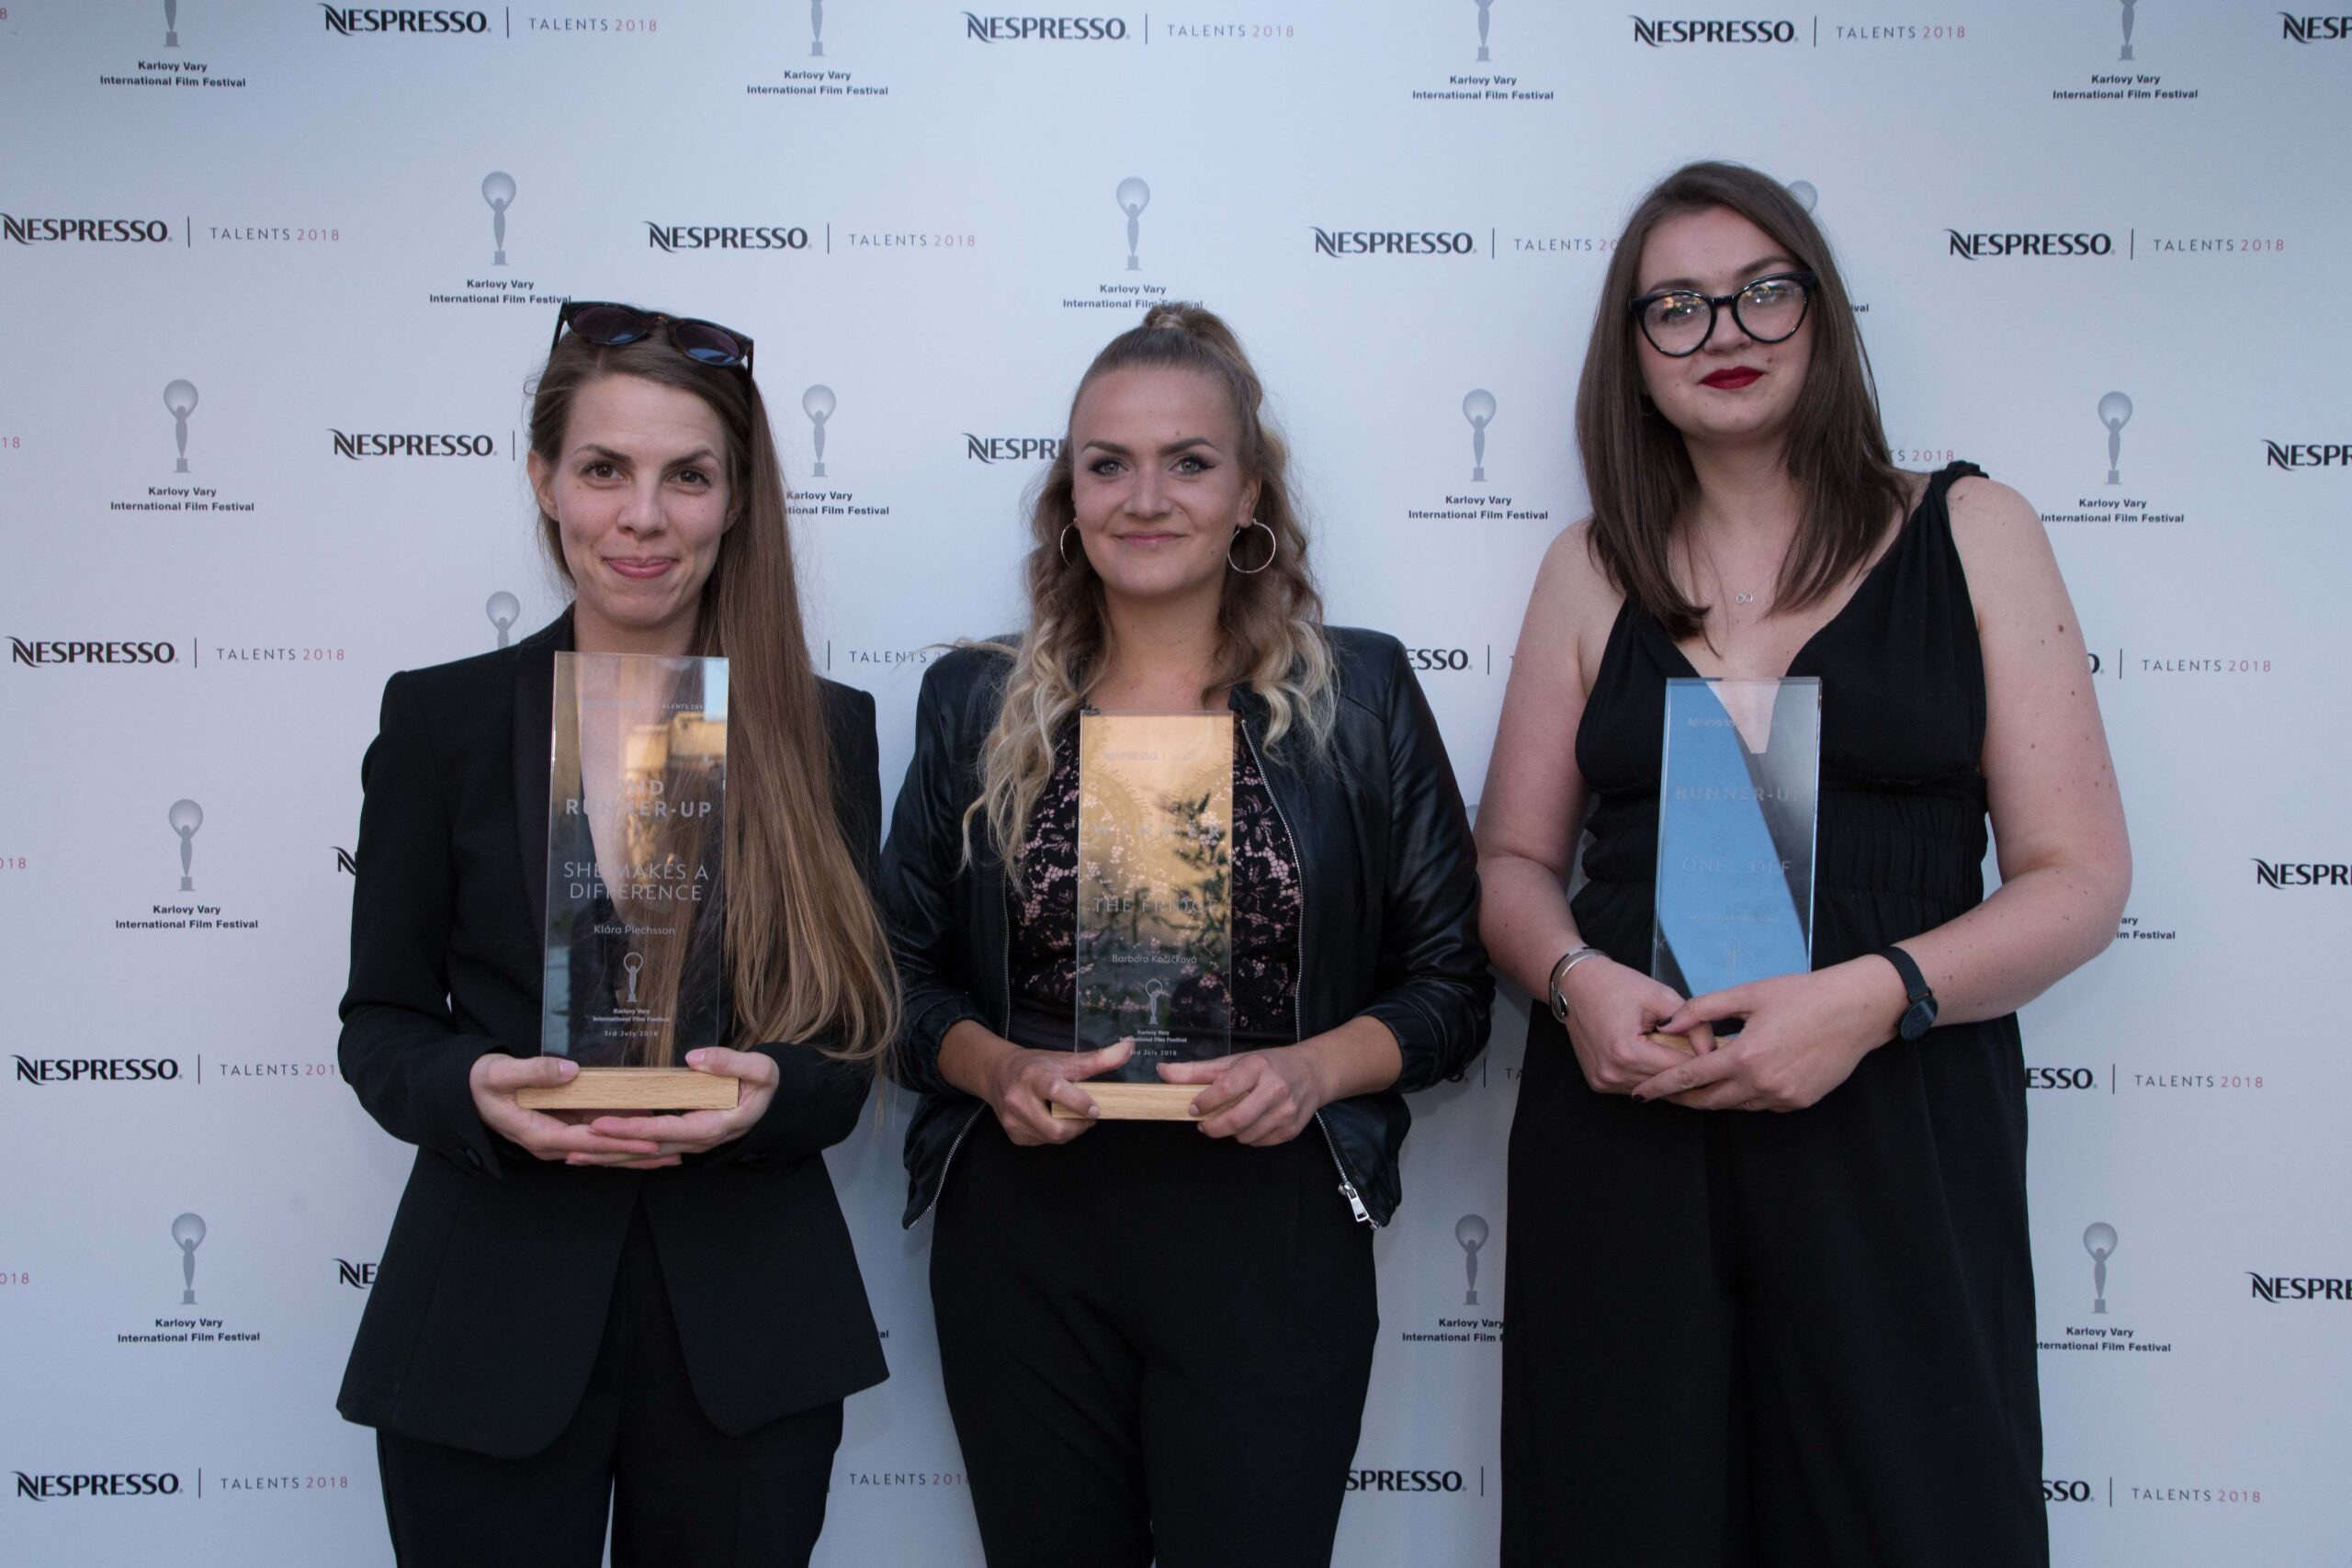 Vítězky české sekce soutěže Nespresso Talents: Klára Plechsson, Barbora Kočičková a Veronika Kellnerová.